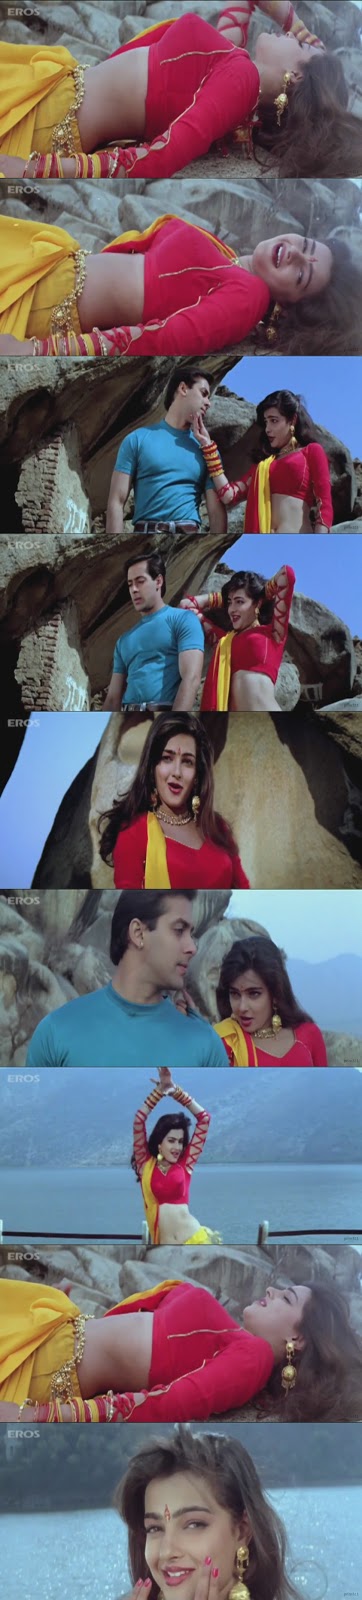 True HD Hindi Video Songs Vol 15 Bluray 1080p - Hon3y